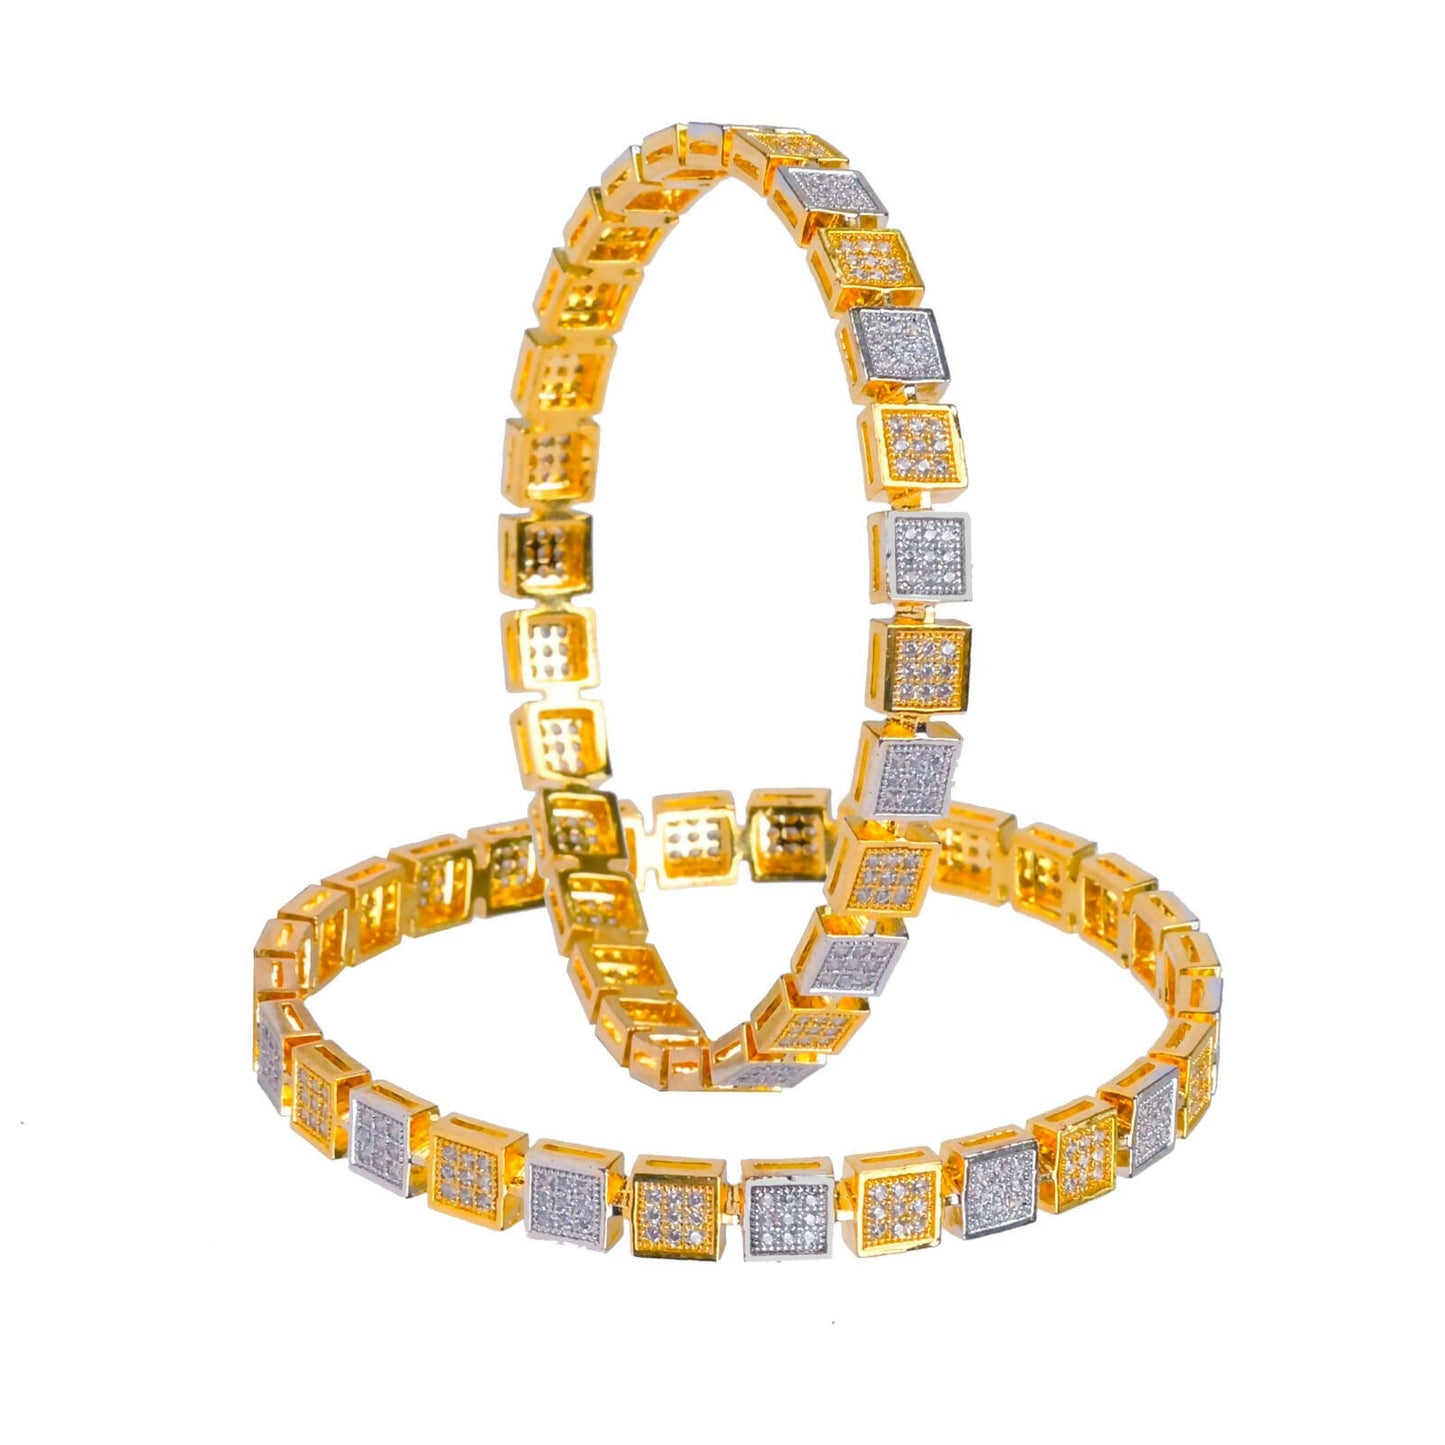 Diamond studded golden bangles